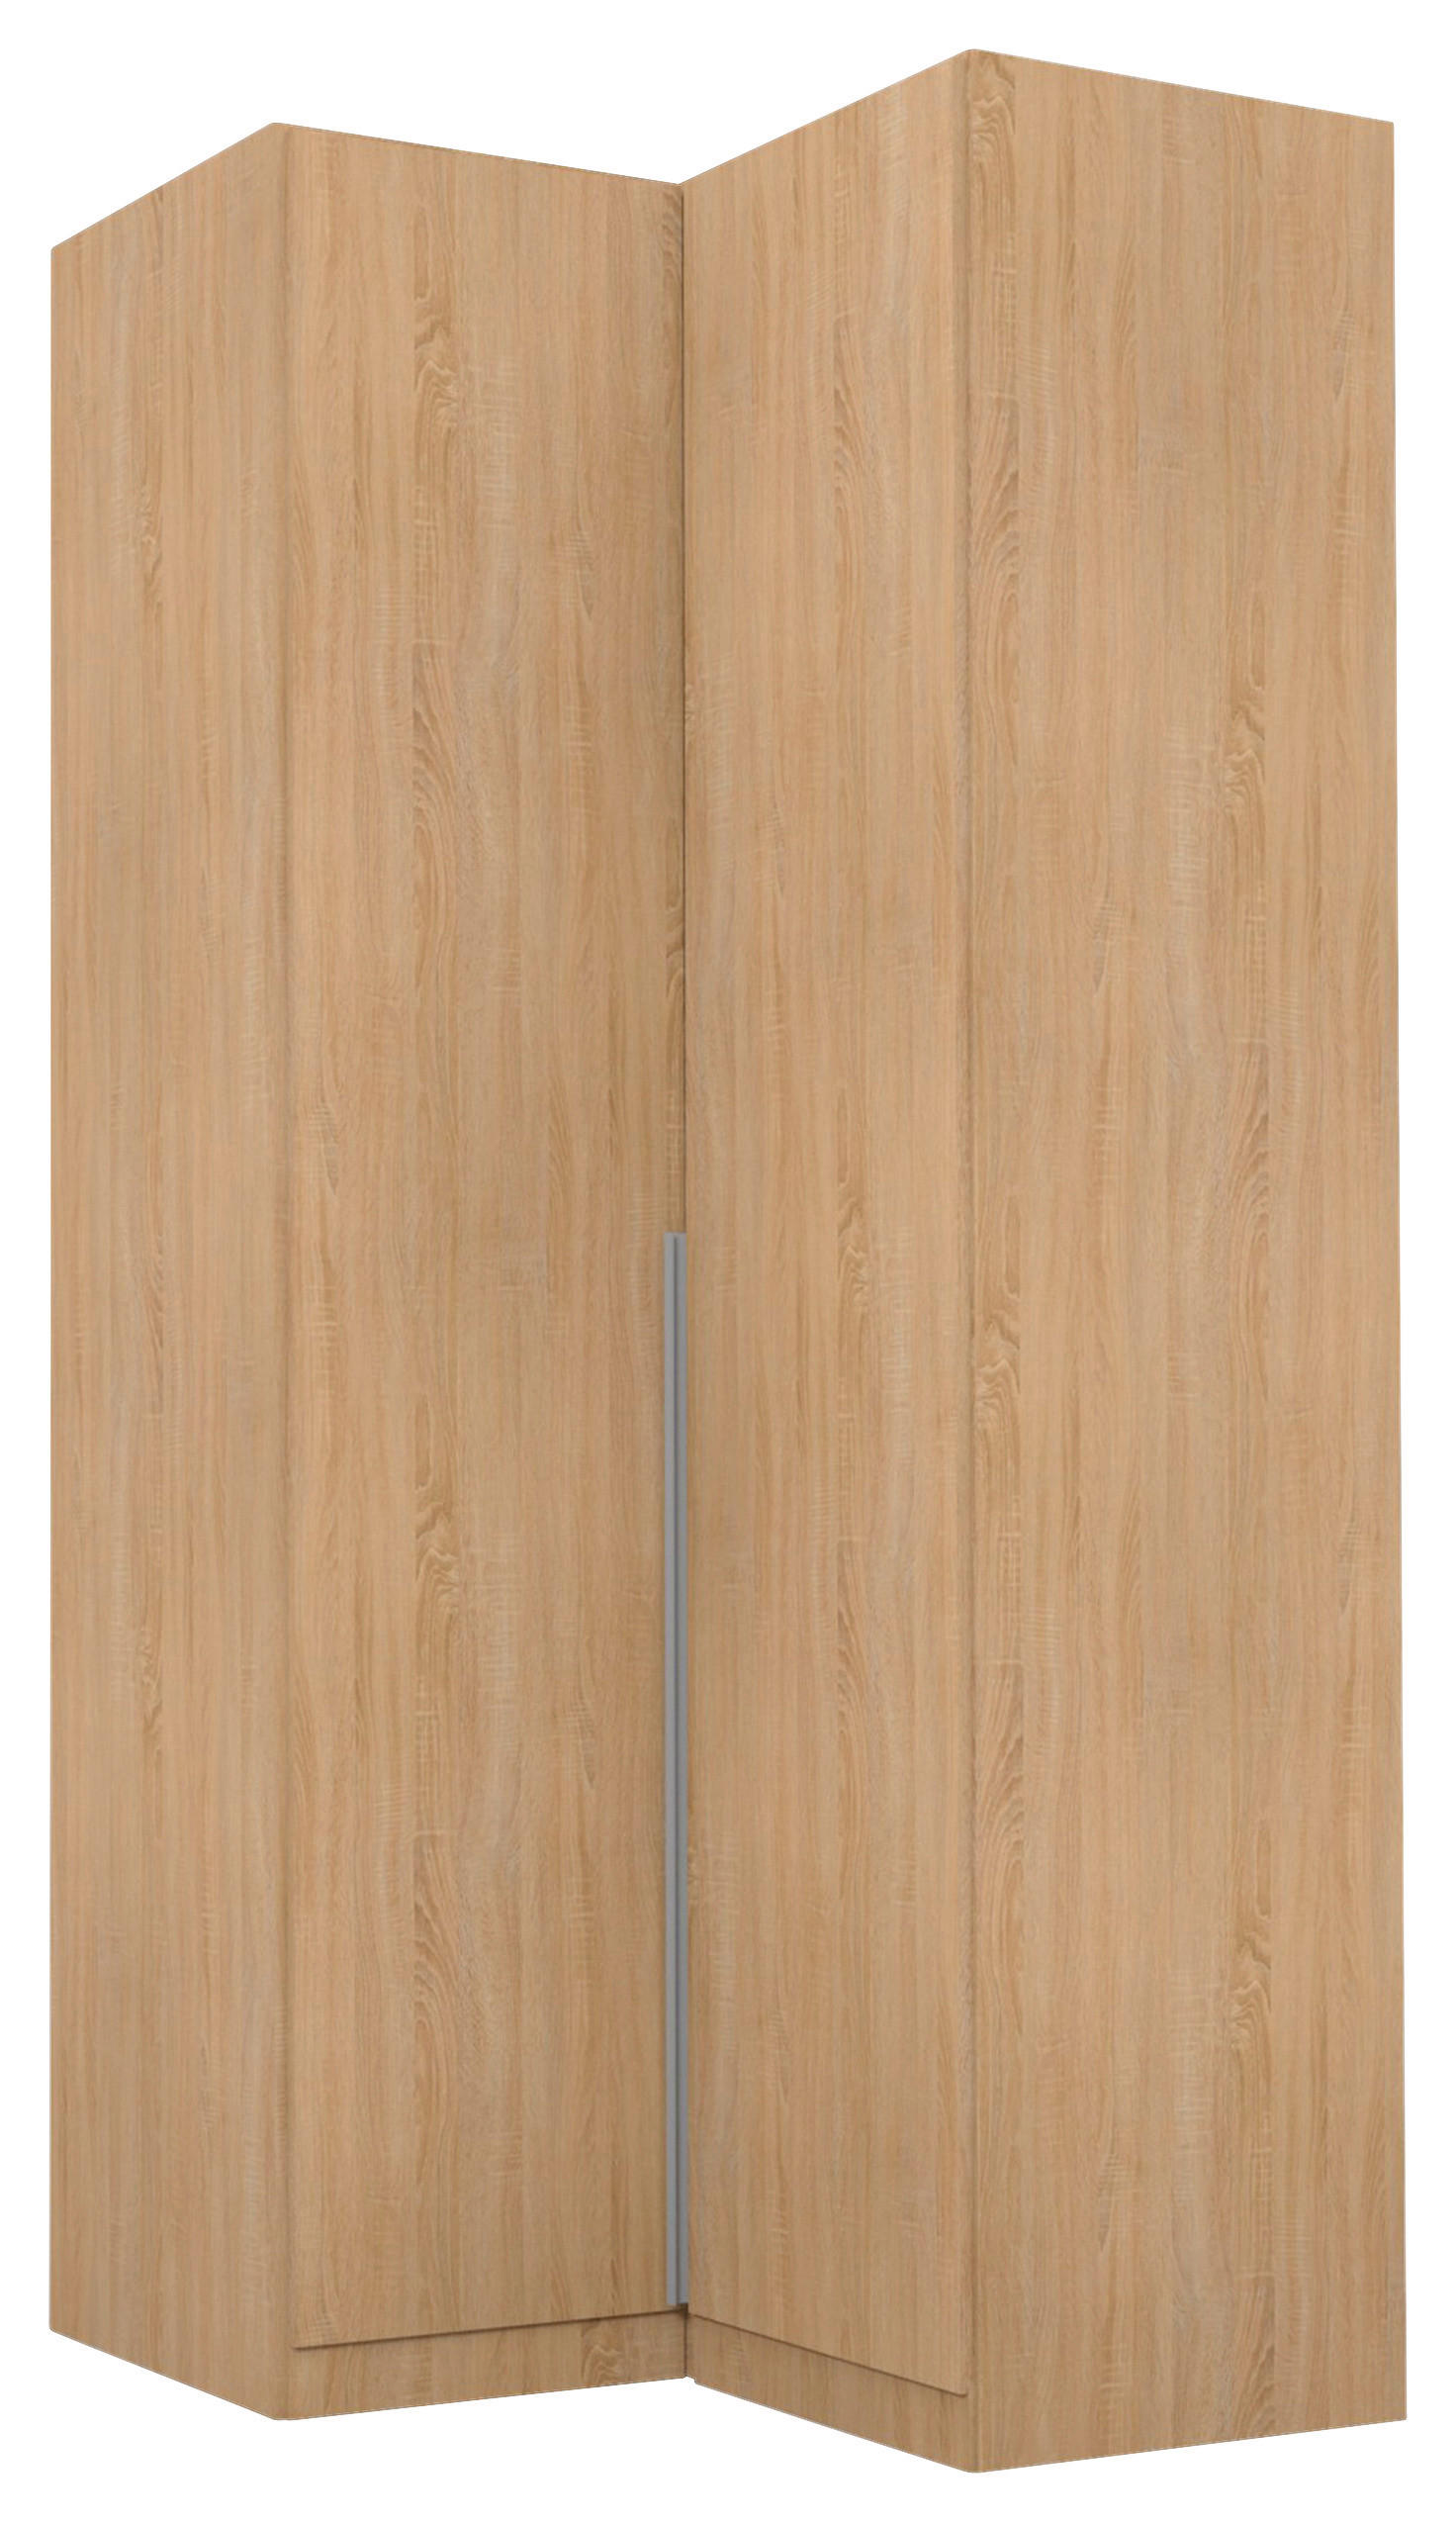 ECKKLEIDERSCHRANK 100/239/102 cm  - Alufarben/Sonoma Eiche, MODERN, Holzwerkstoff (100/239/102cm) - Rauch Möbel